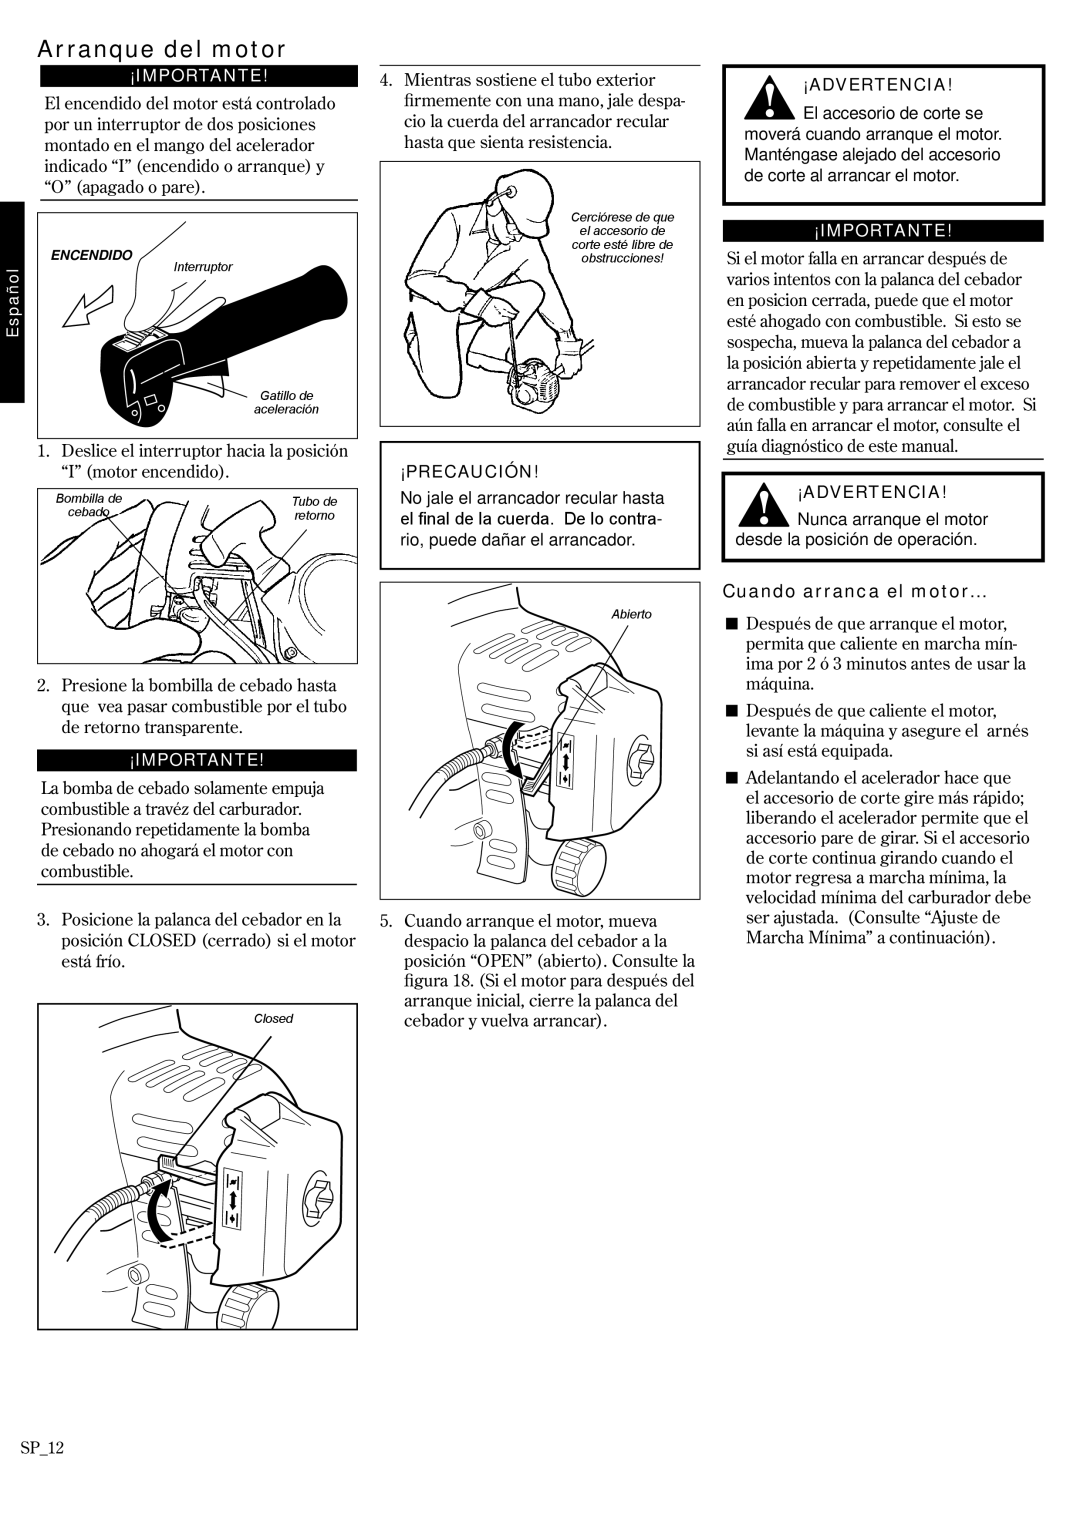 Shindaiwa 62891-94311 manual Arranque del motor, Cuando arranca el motor…, ¡Importante, ¡Advertencia, ¡Precaución 